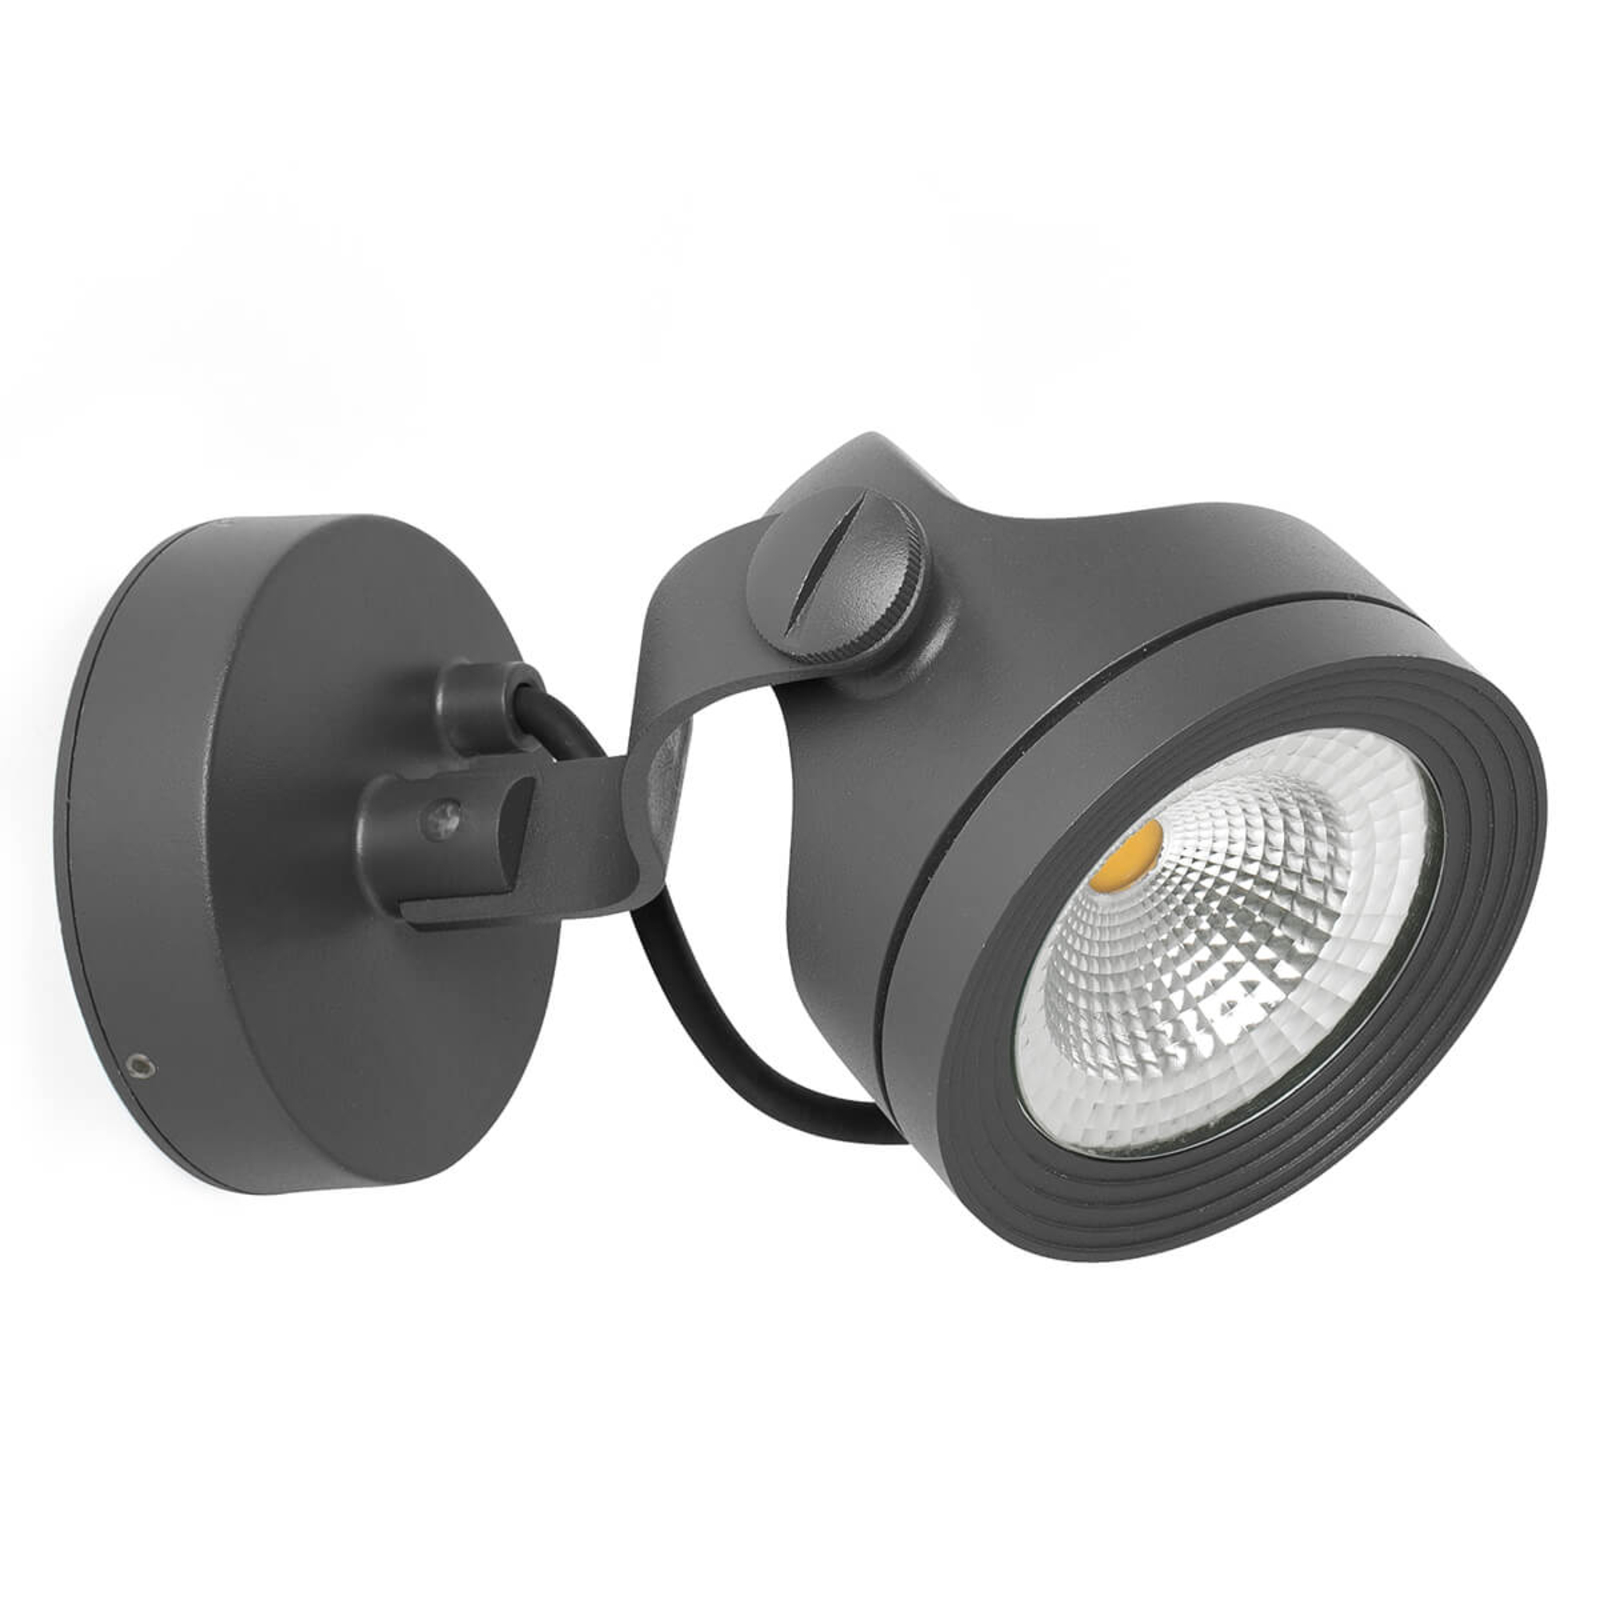 Dalset gek geworden medeklinker Alfa - kantelbare LED-buitenwandspot, IP65 | Lampen24.be